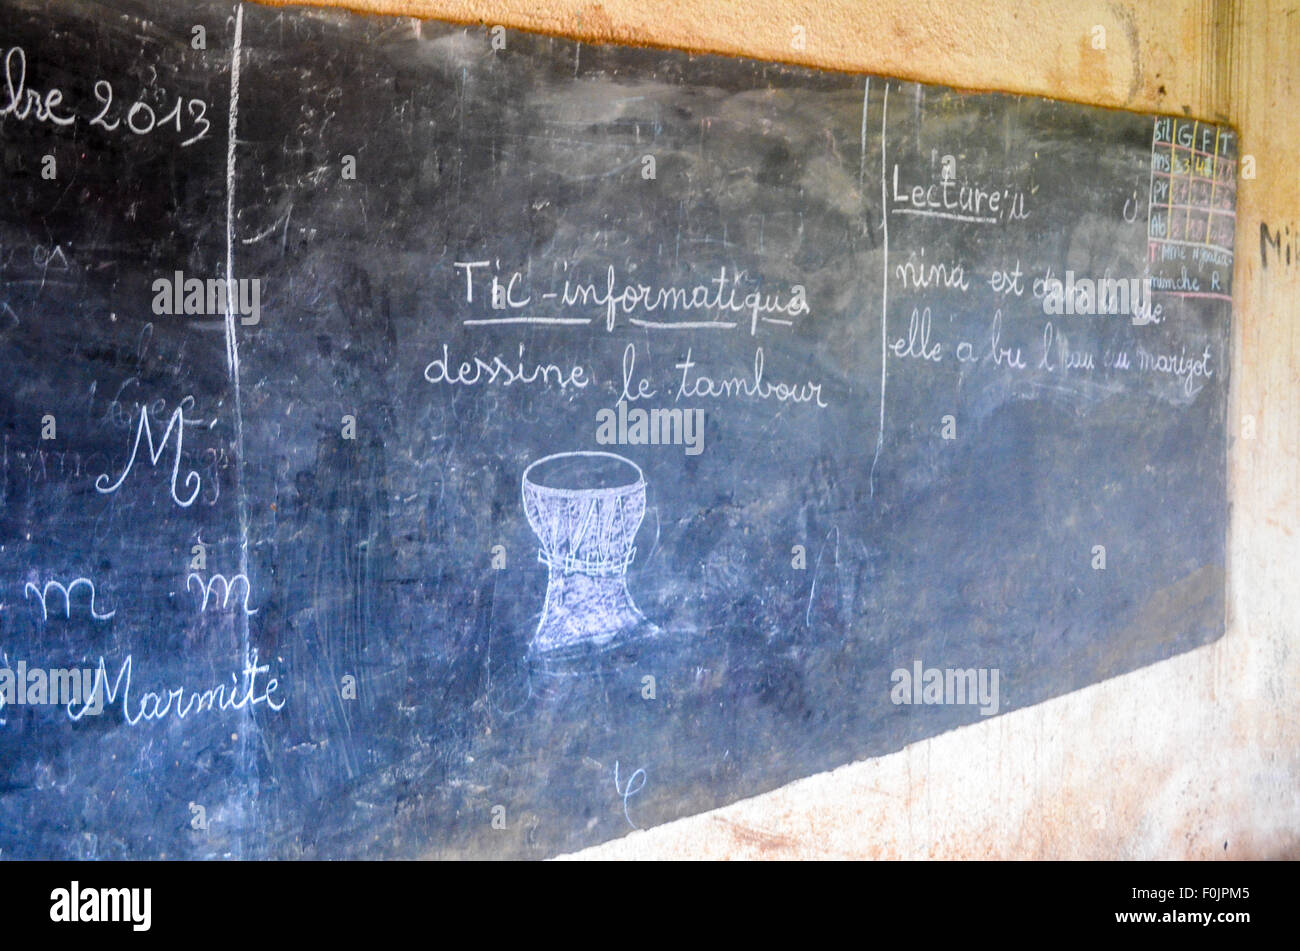 Scheda nero in una scuola rurale africana che mostra un tamburo sotto il titolo "TIC - Informatica' e chiedendo agli studenti di disegnare il tamburo. Foto Stock